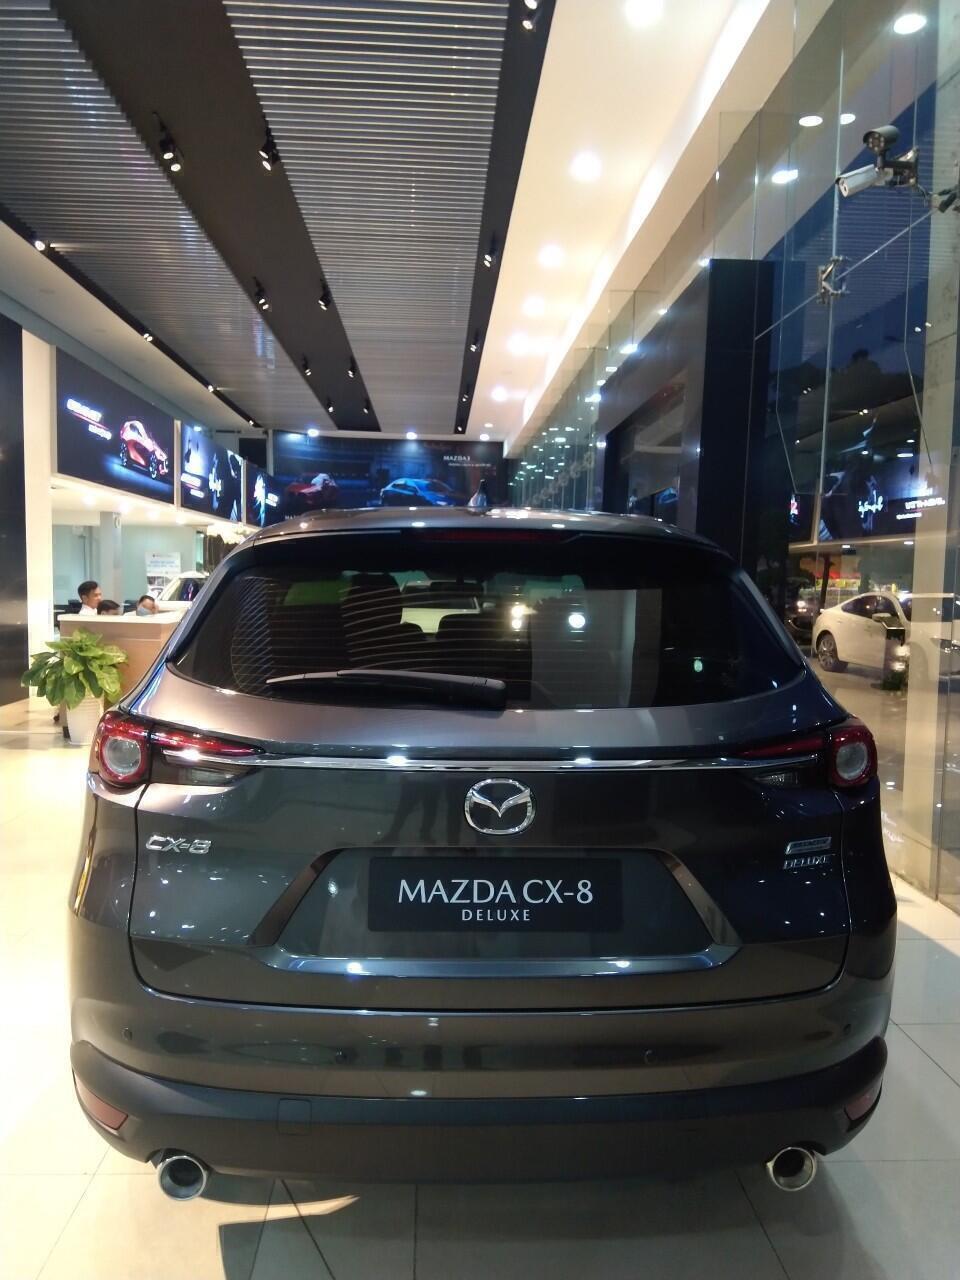 Mazda CX-8 Deluxe